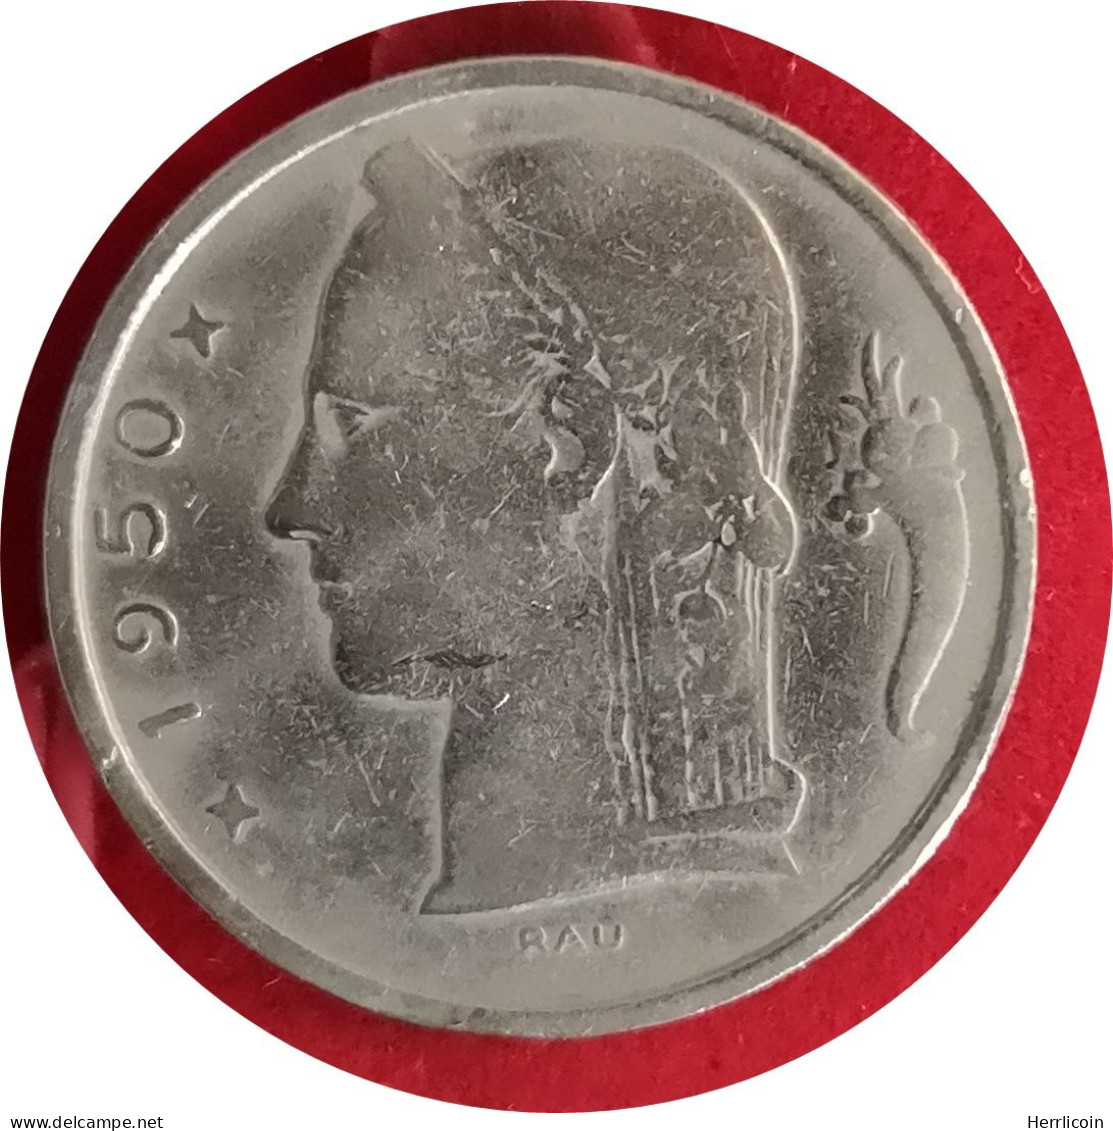 Monnaie Belgique - 1950 - 5 Francs - Type Cérès En Néerlandais - 5 Francs